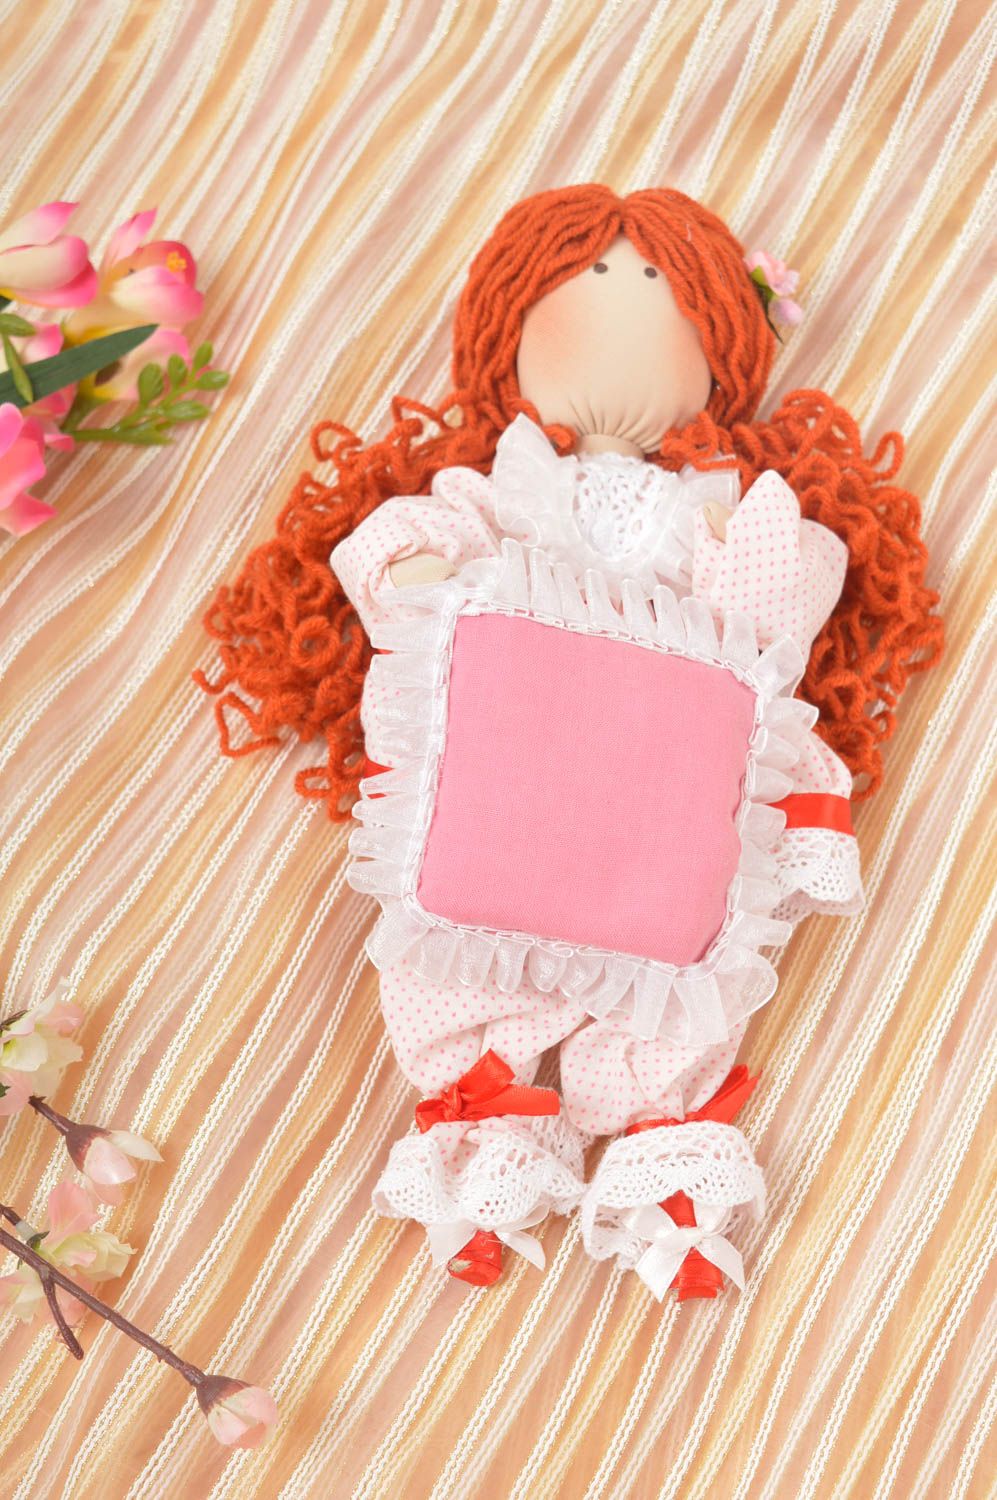 Авторская кукла игрушка ручной работы дизайнерская кукла с рыжими волосами фото 1